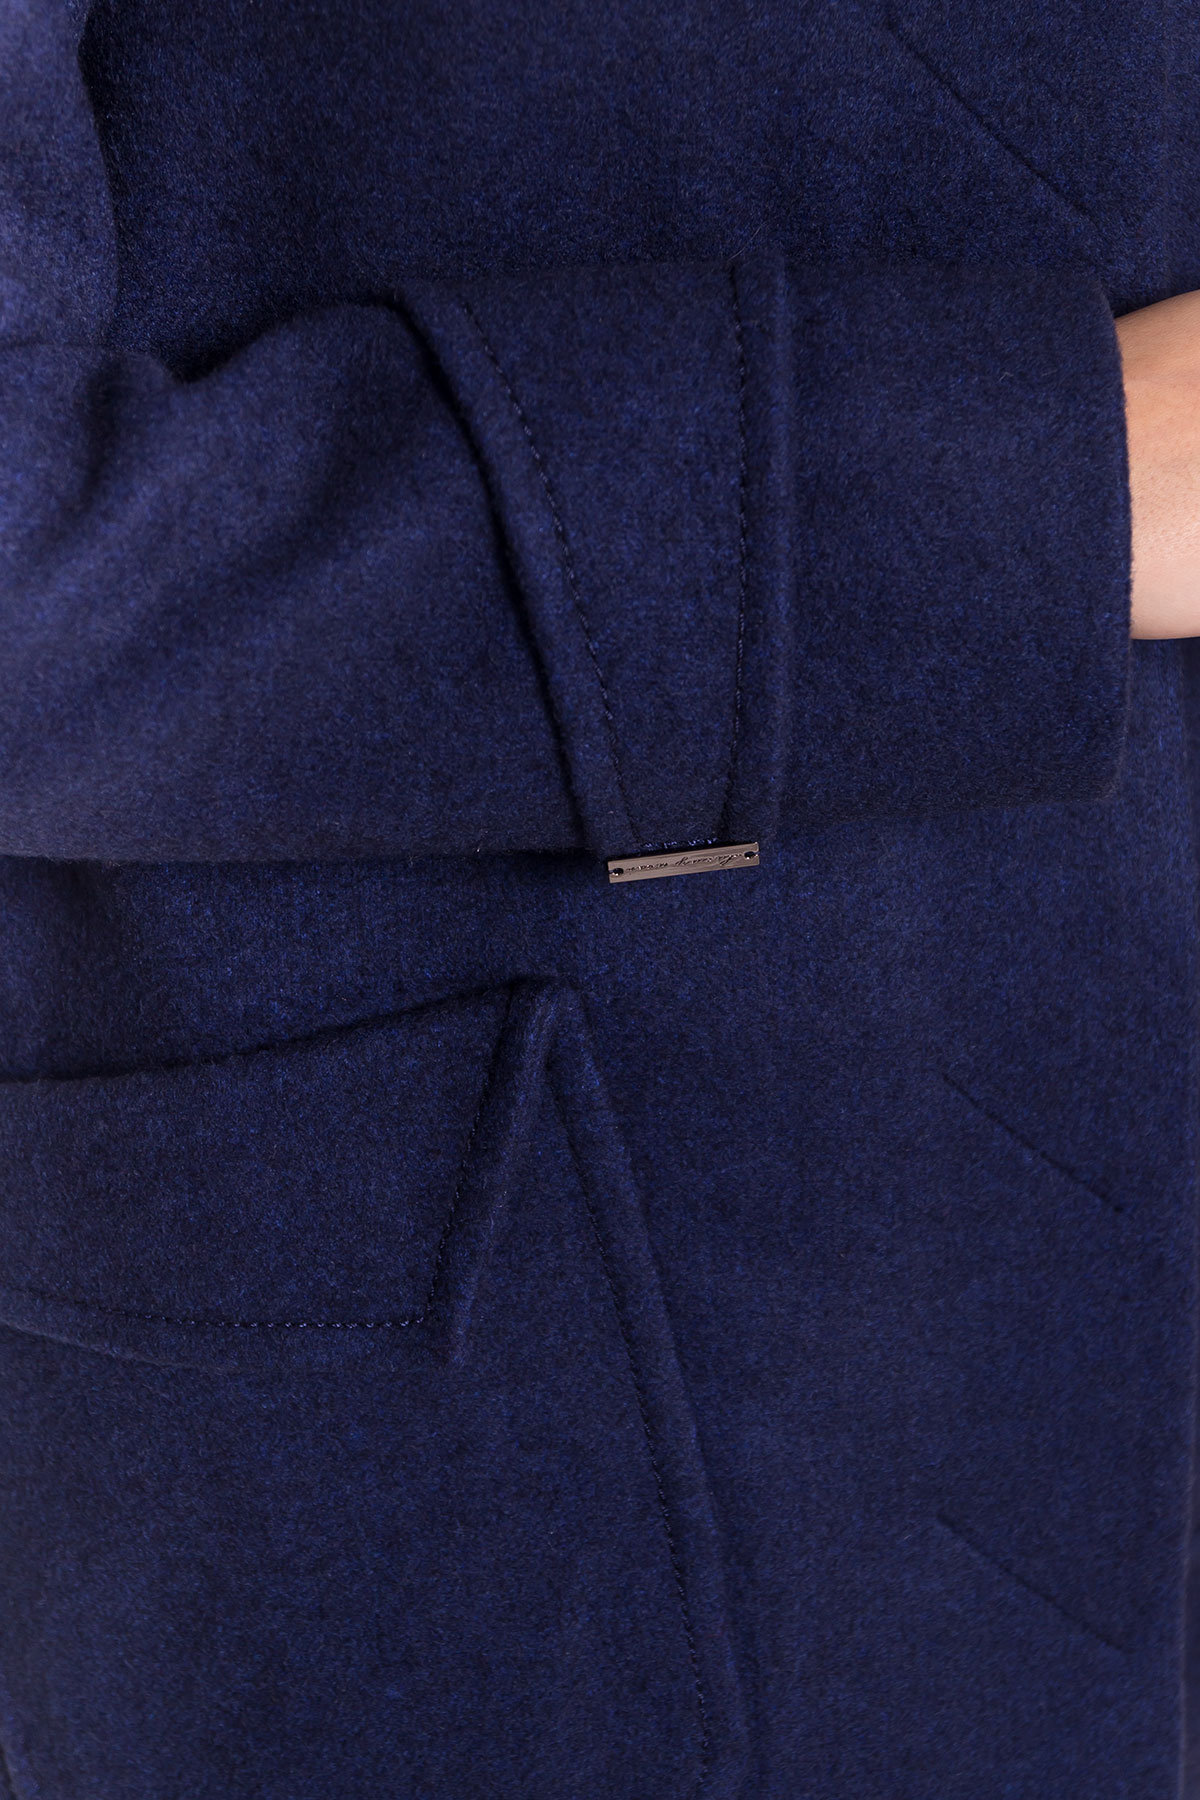 Демисезонное пальто с воротником стойка Эста 5417 АРТ. 36787 Цвет: Темно-синий 17 - фото 6, интернет магазин tm-modus.ru